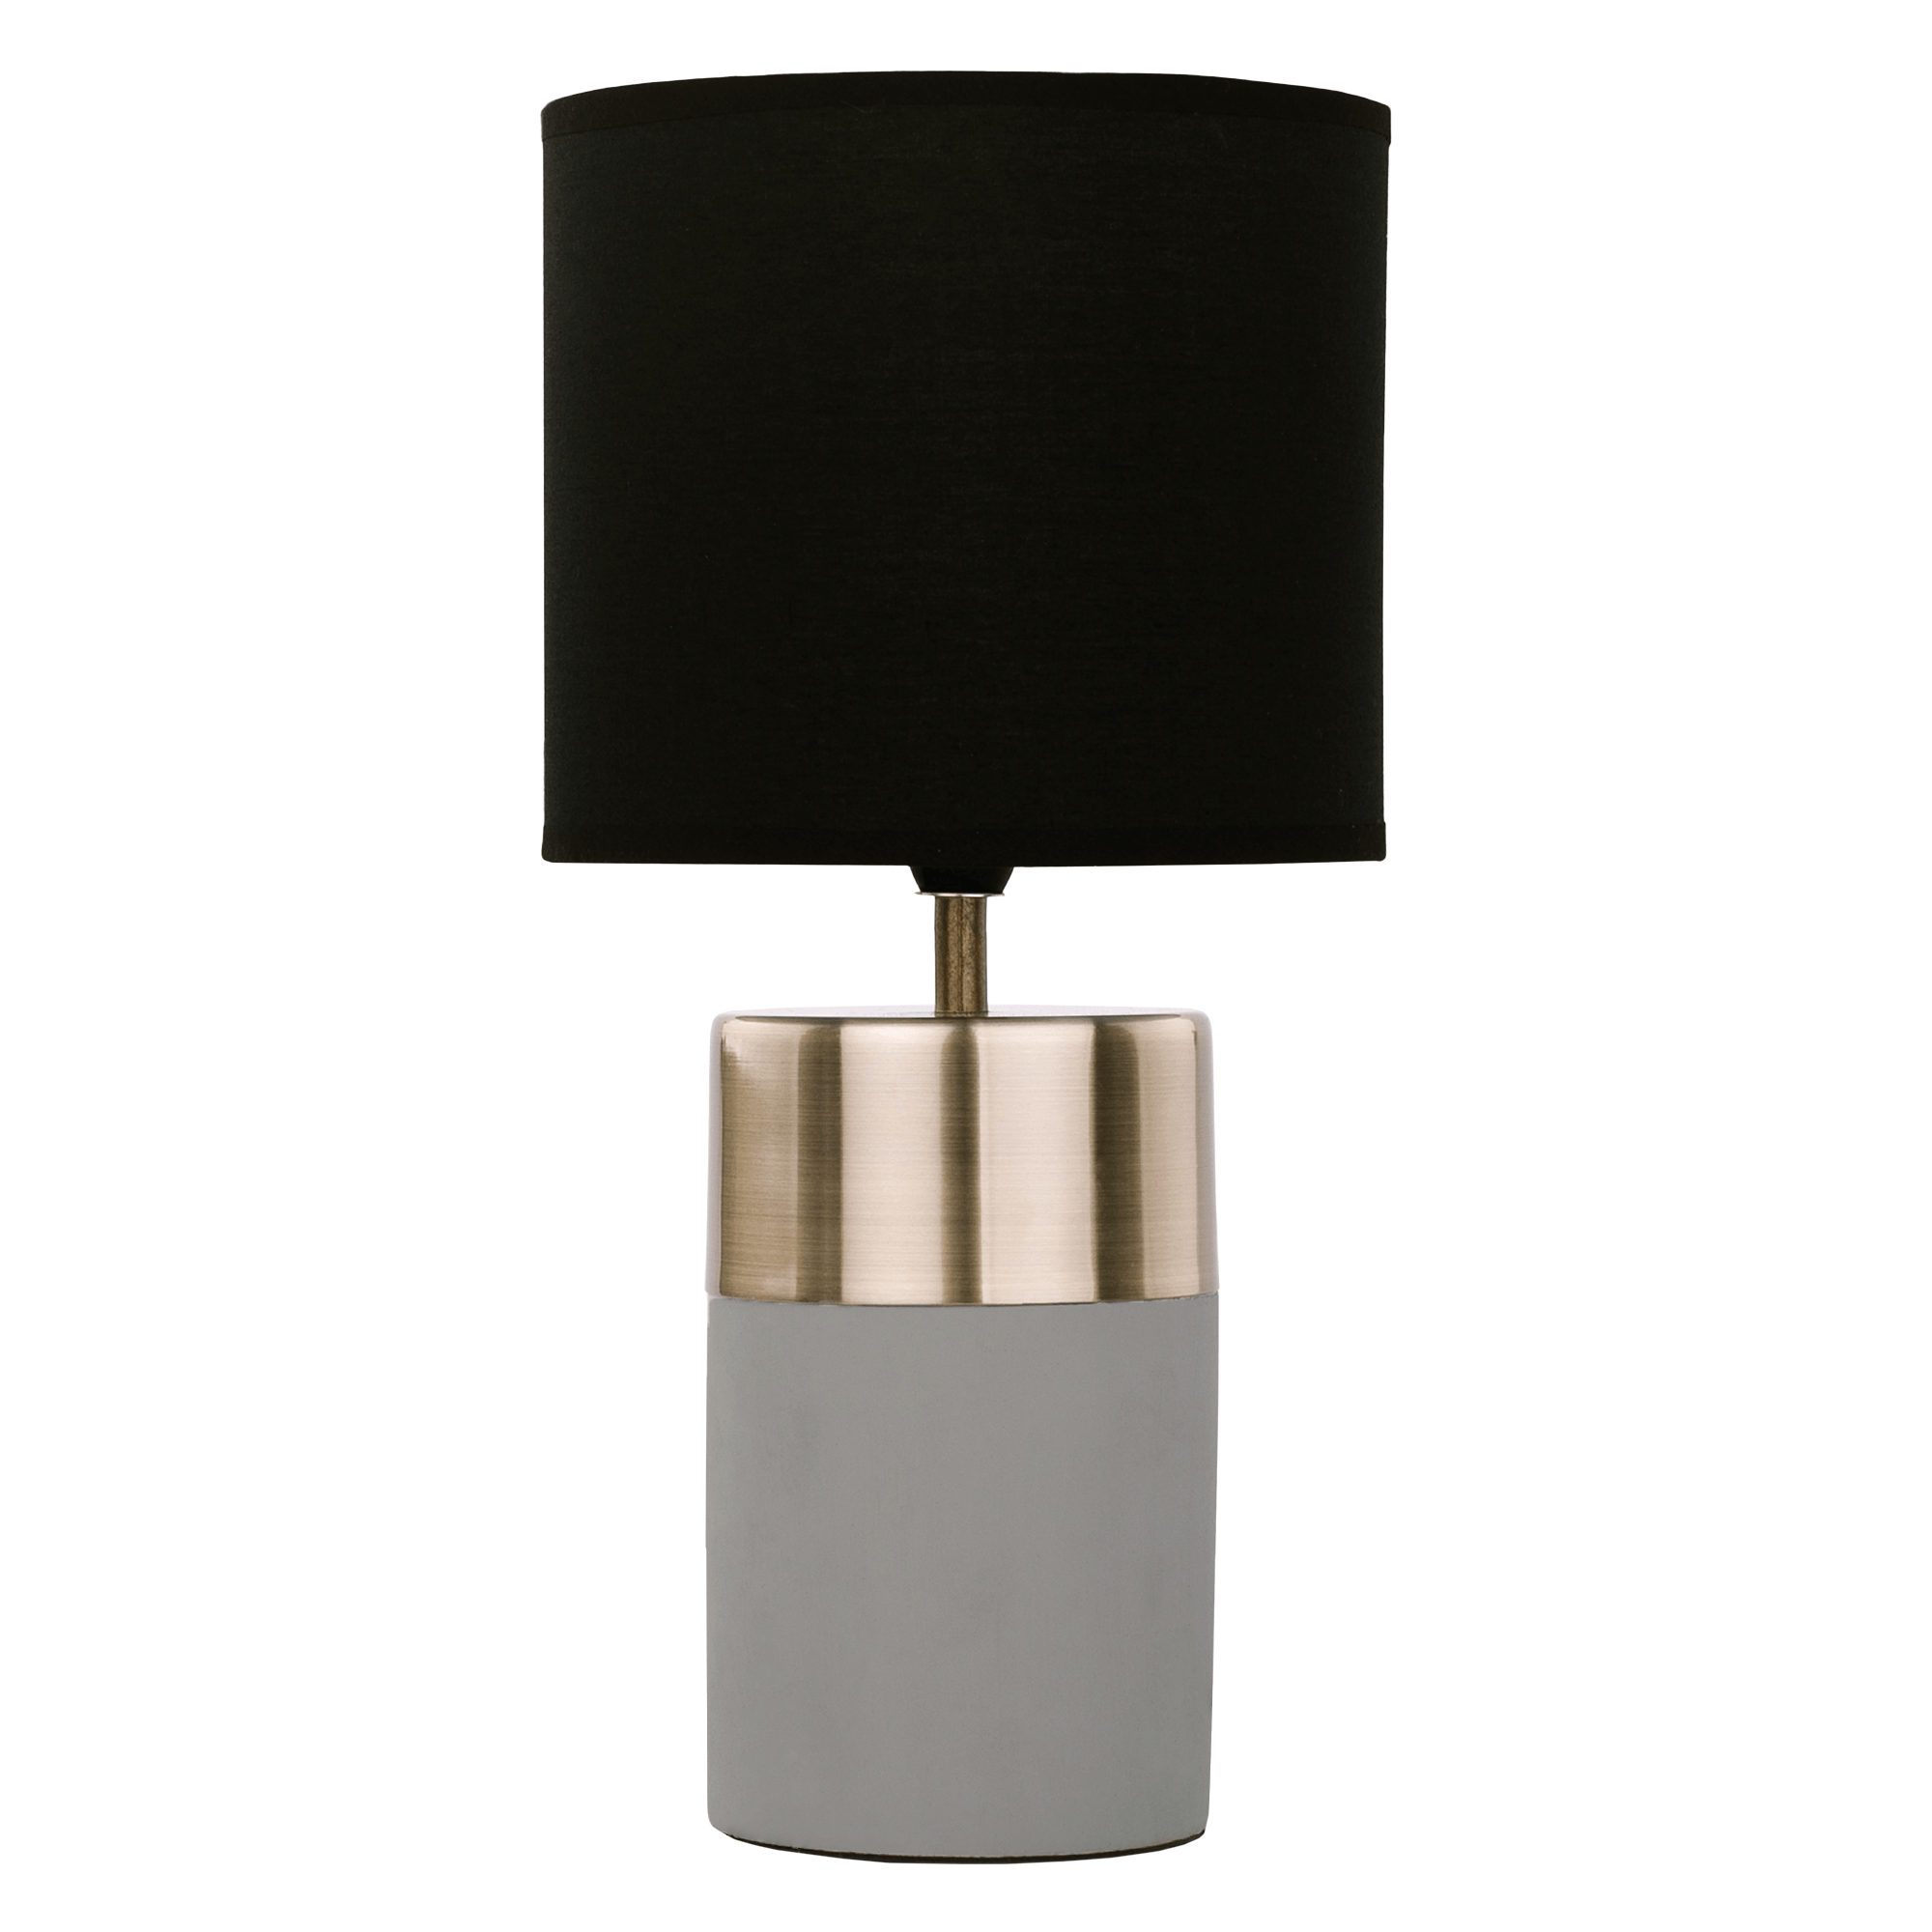 Asztali lámpa, világosszürke/fekete, QENNY TYP 20 (TK)